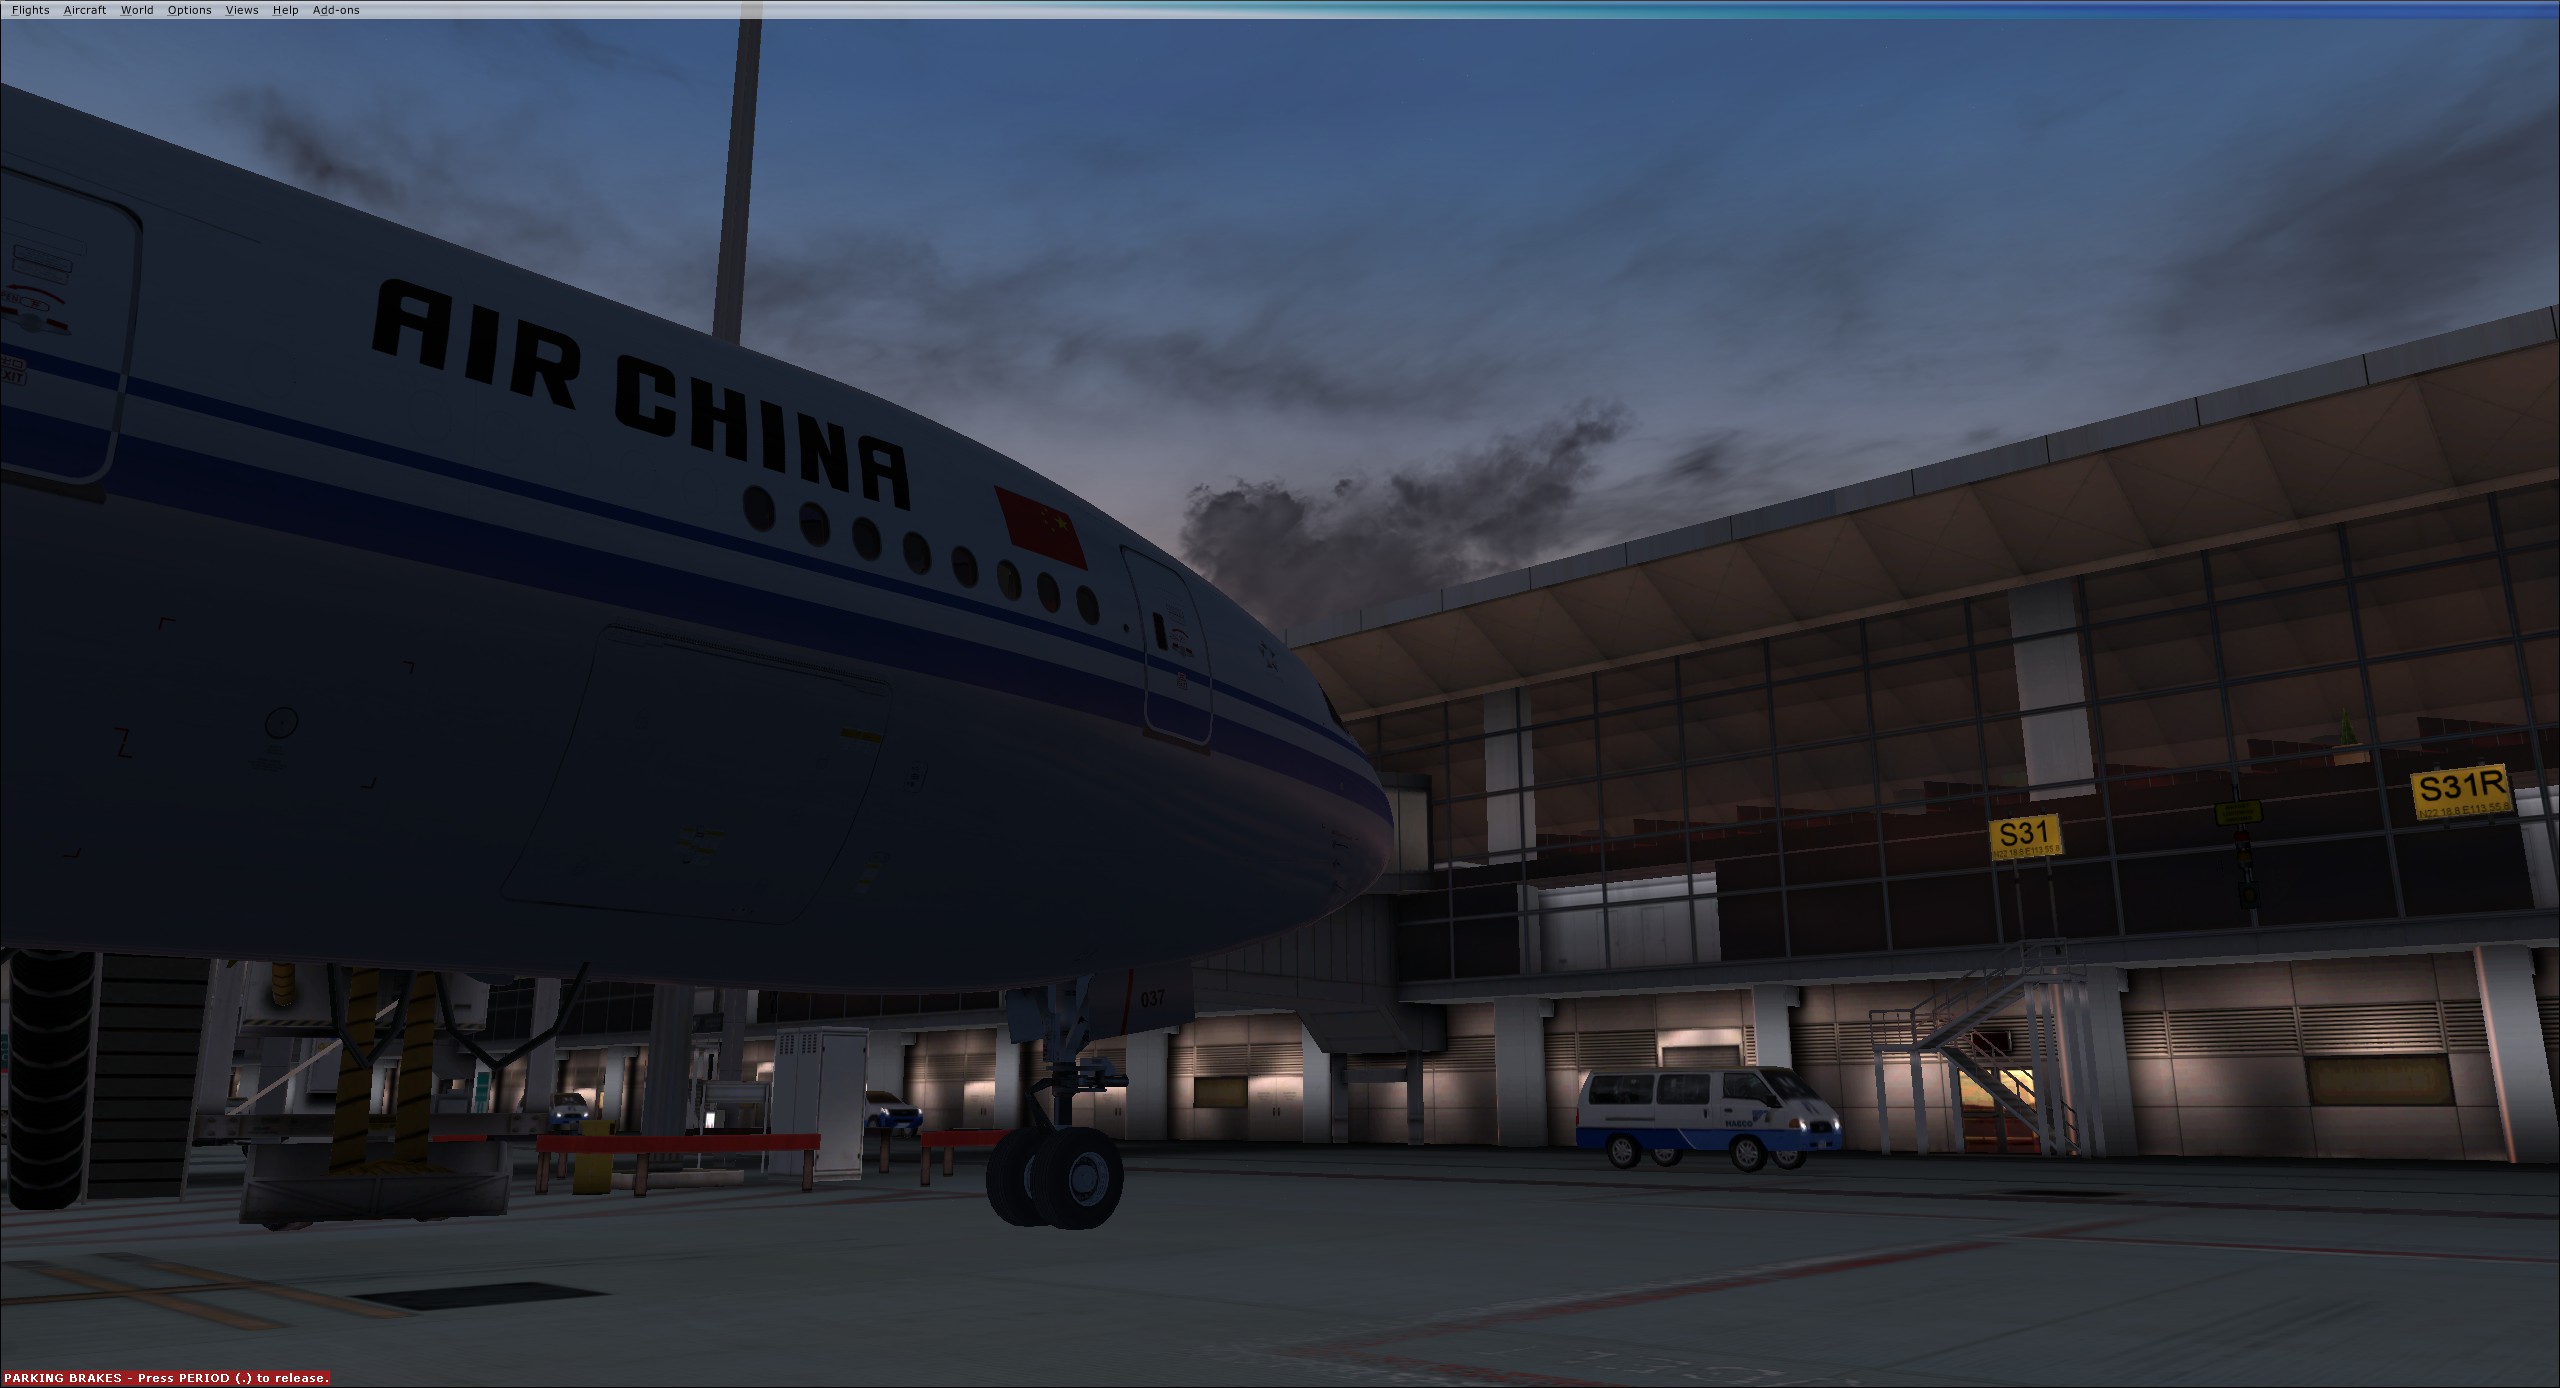 AirChina B77W VHHH-9284 